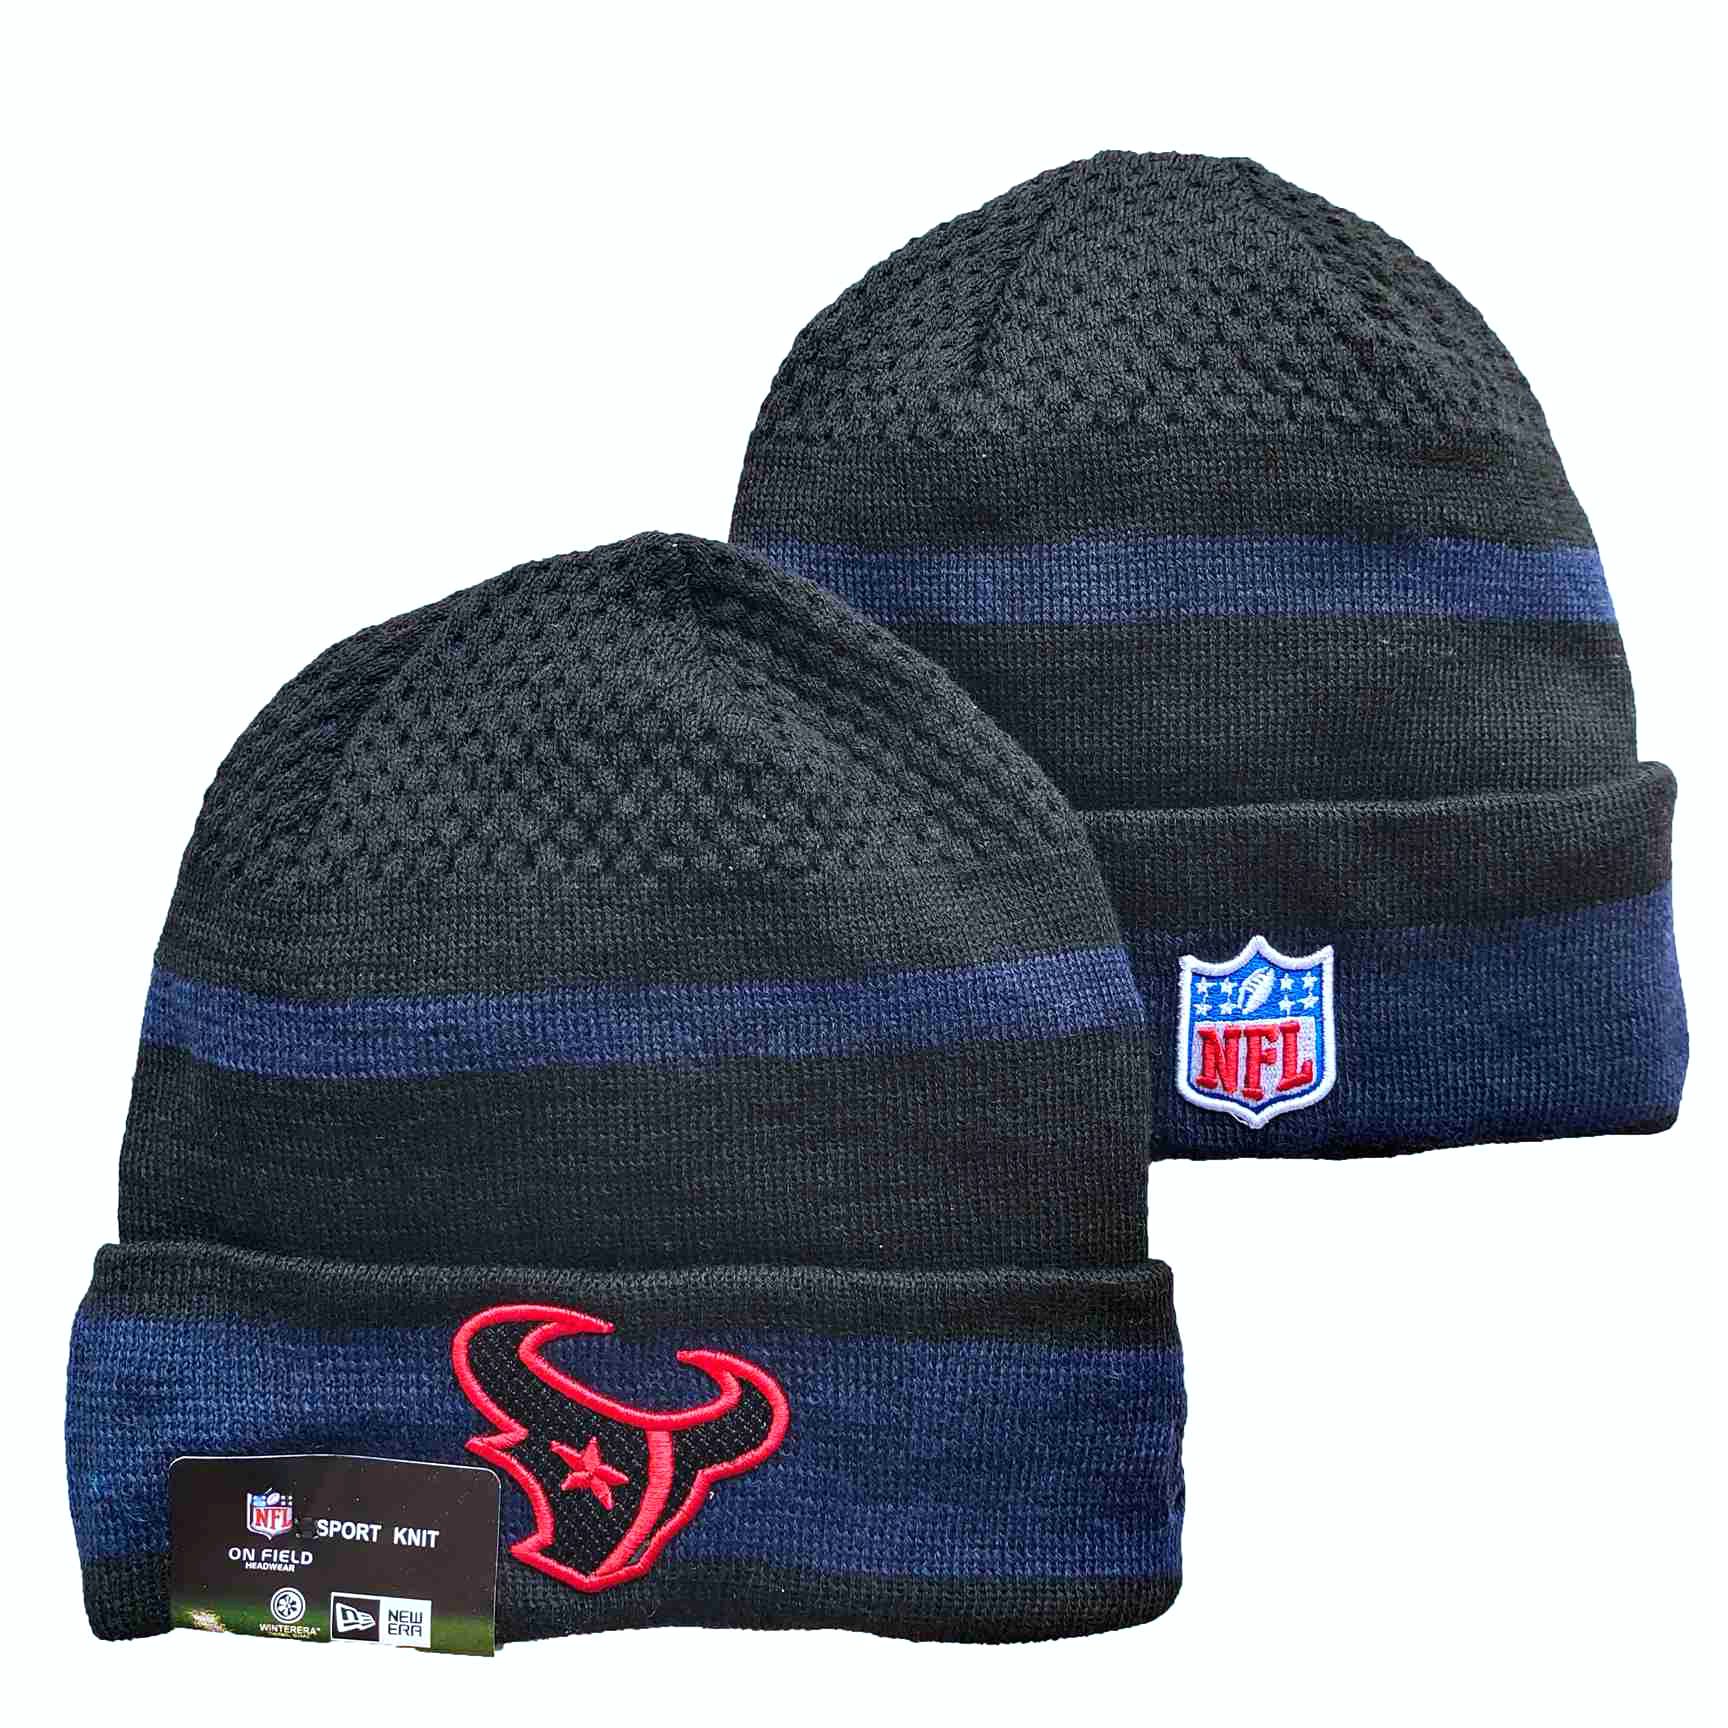 NFL Houston Texans Beanies Knit Hats-YD1204